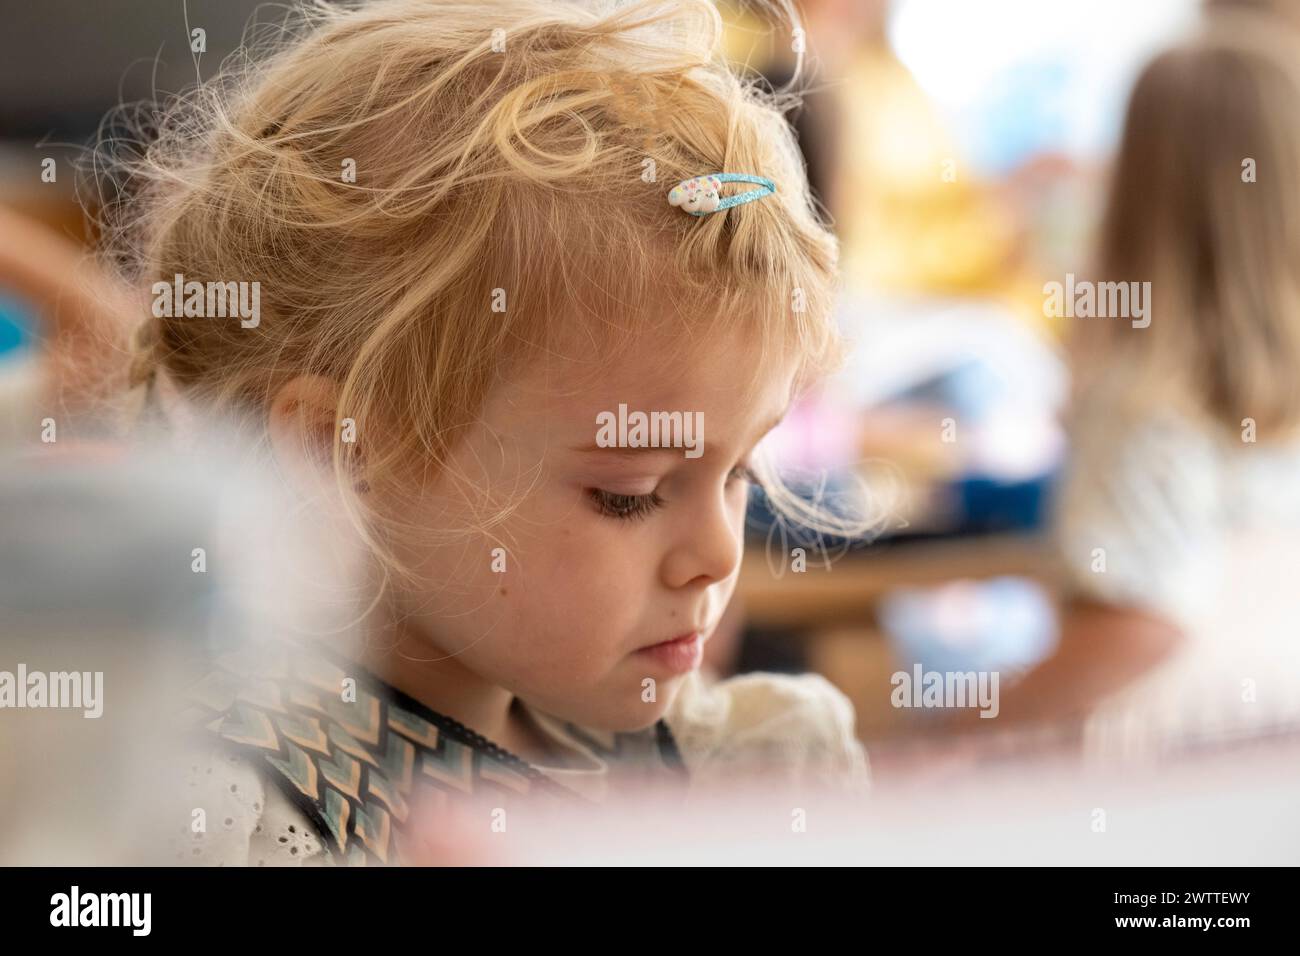 Das kleine Mädchen konzentrierte sich auf eine kreative Aufgabe während des Spielens. Stockfoto